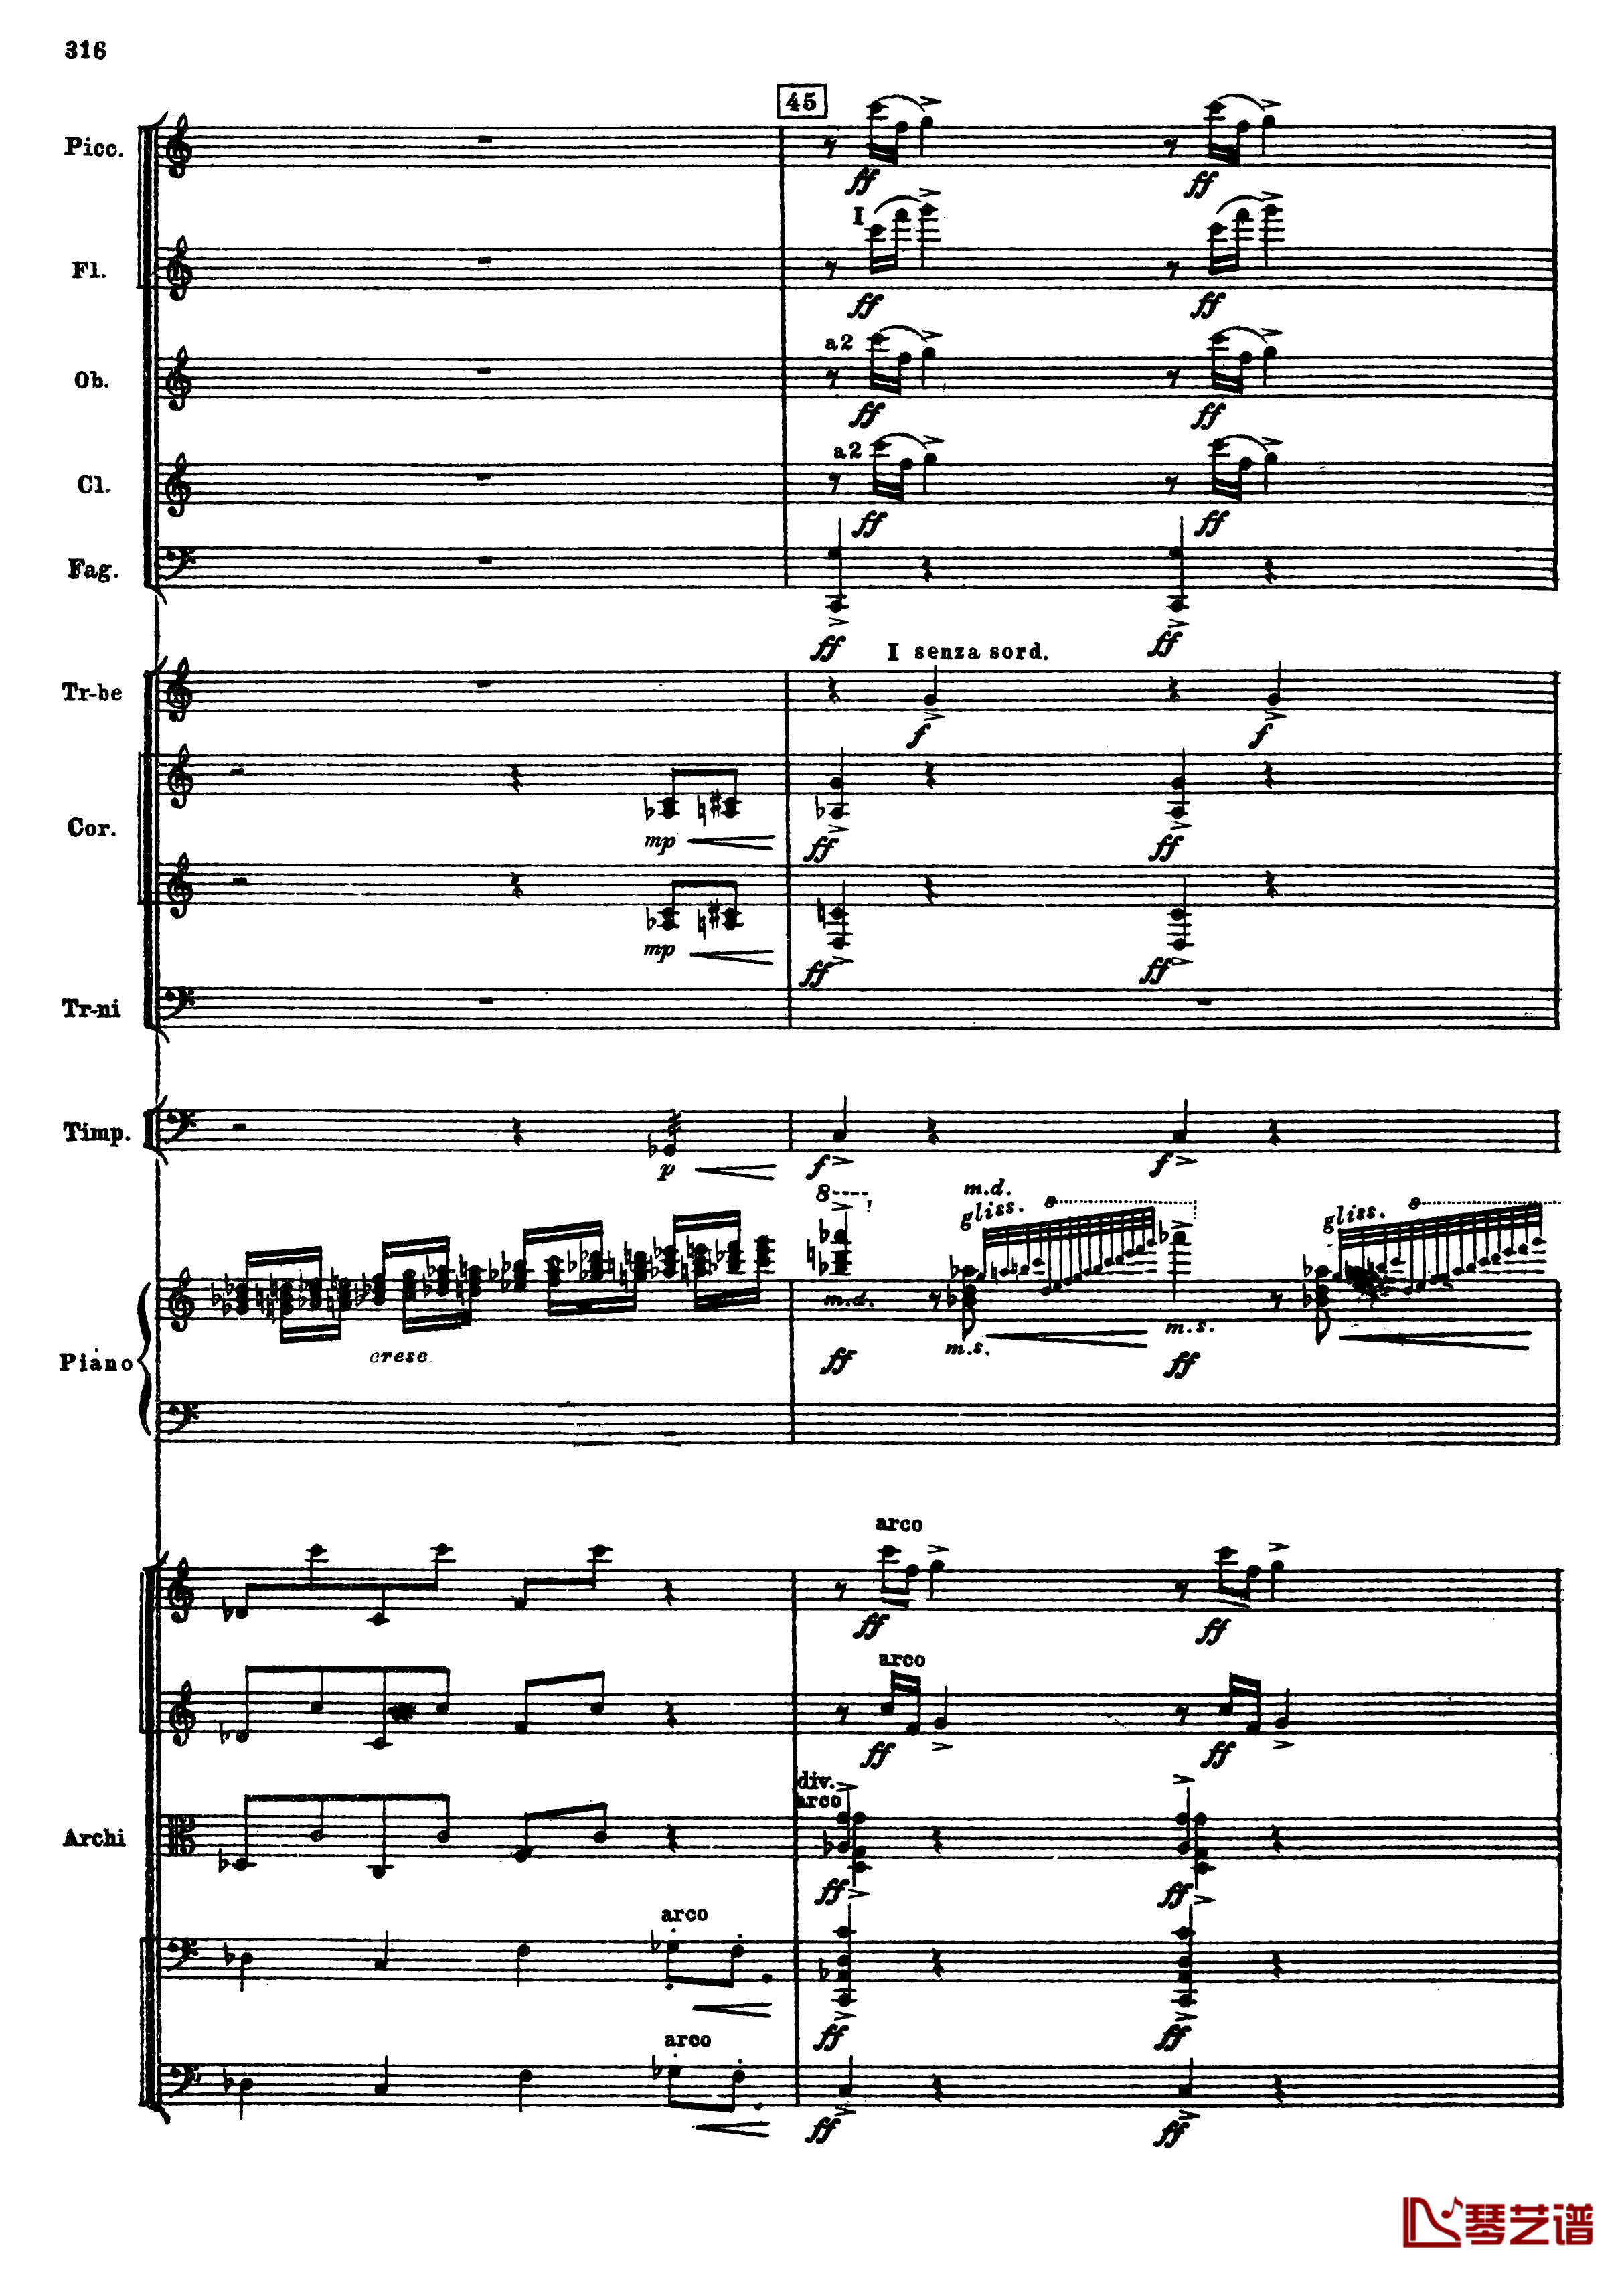 普罗科菲耶夫第三钢琴协奏曲钢琴谱-总谱-普罗科非耶夫48